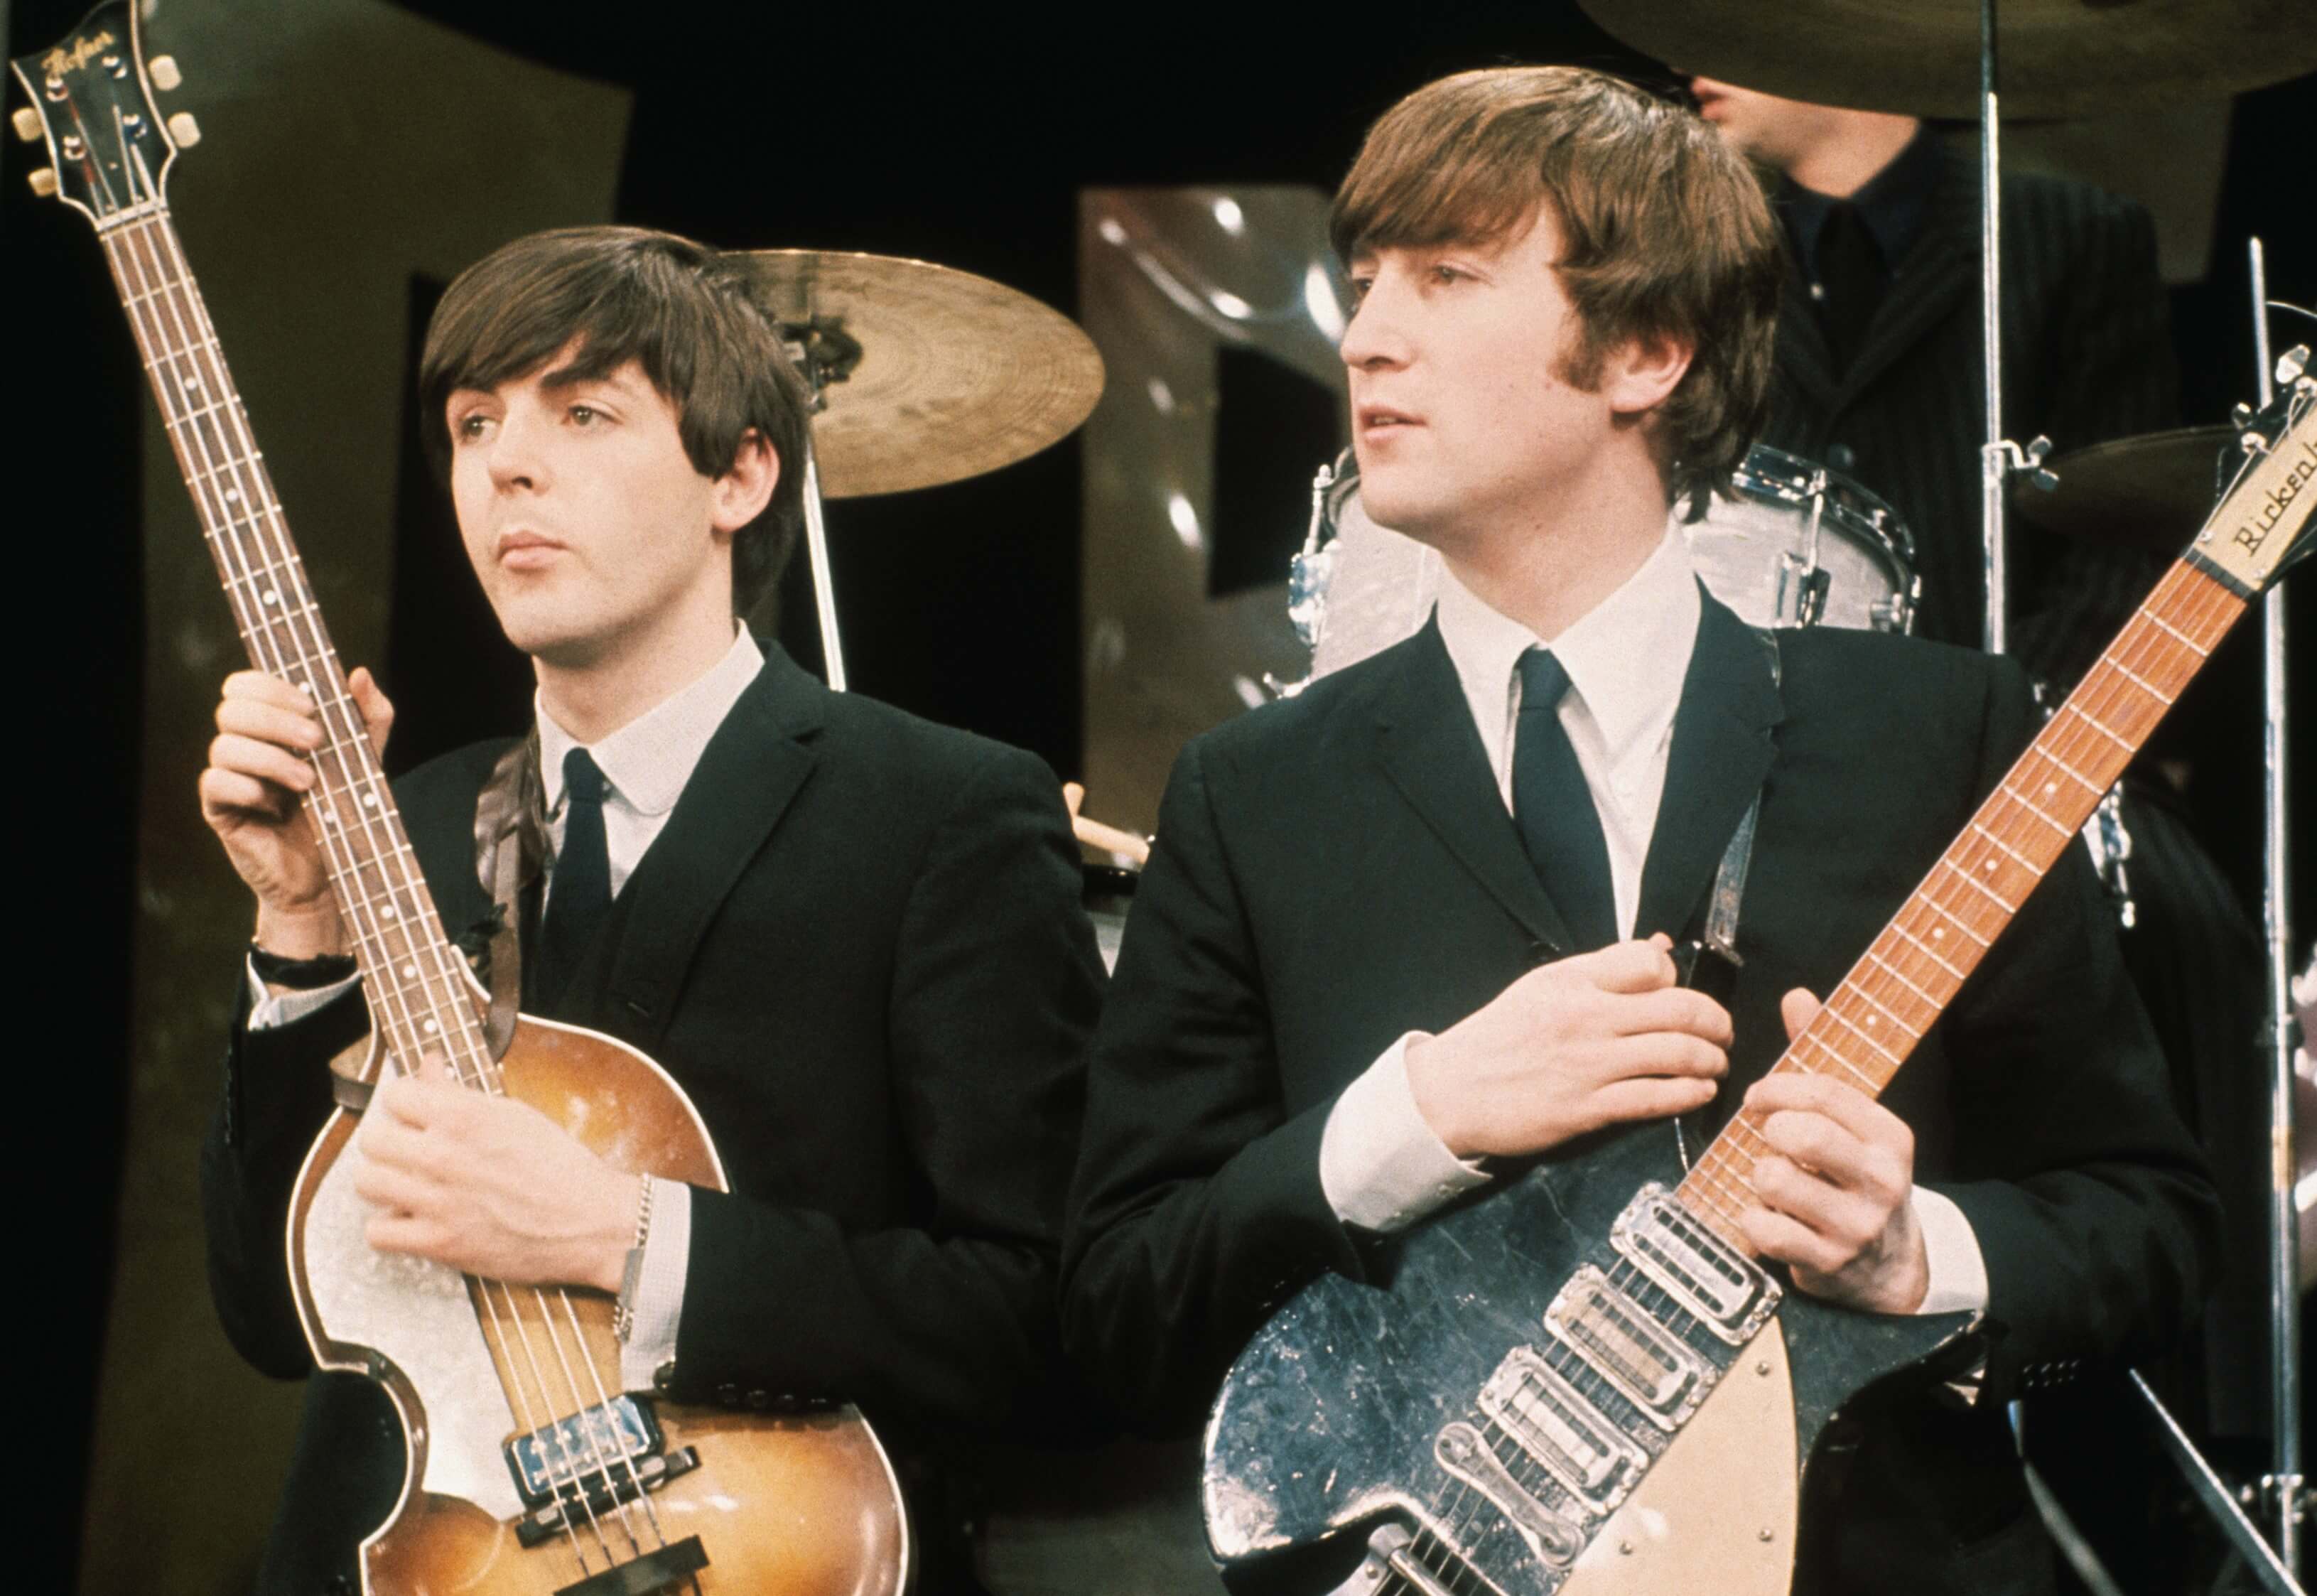 Paul McCartney and John Lennon during The Beatles' "Yesterday" era